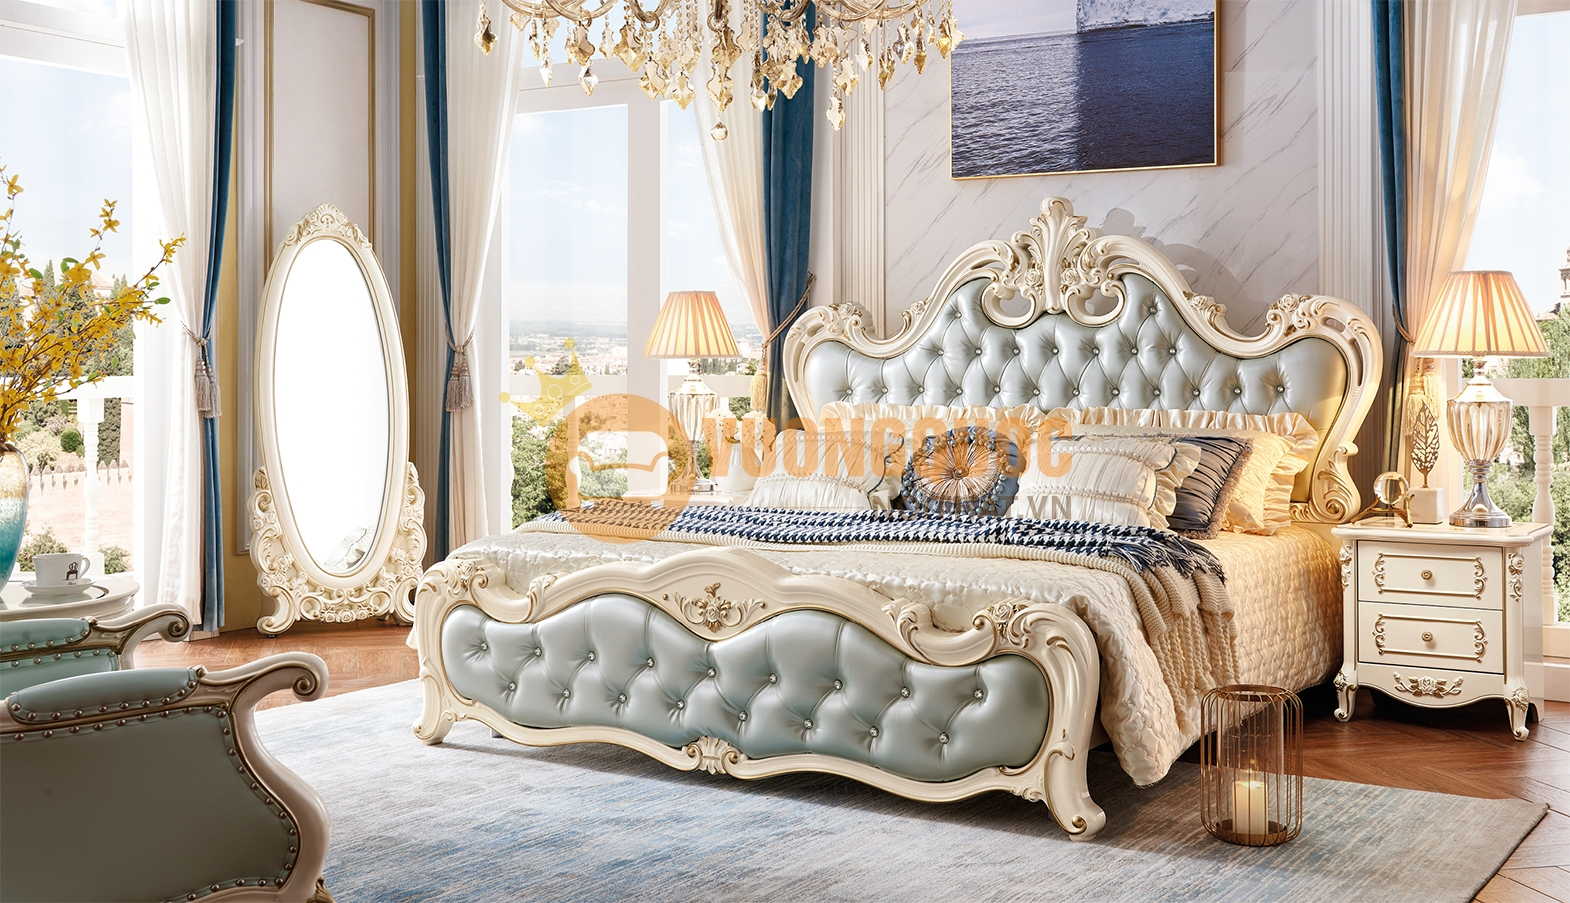 Giường ngủ tân cổ điển kiểu dáng quý tộc JVN618G cao cấp